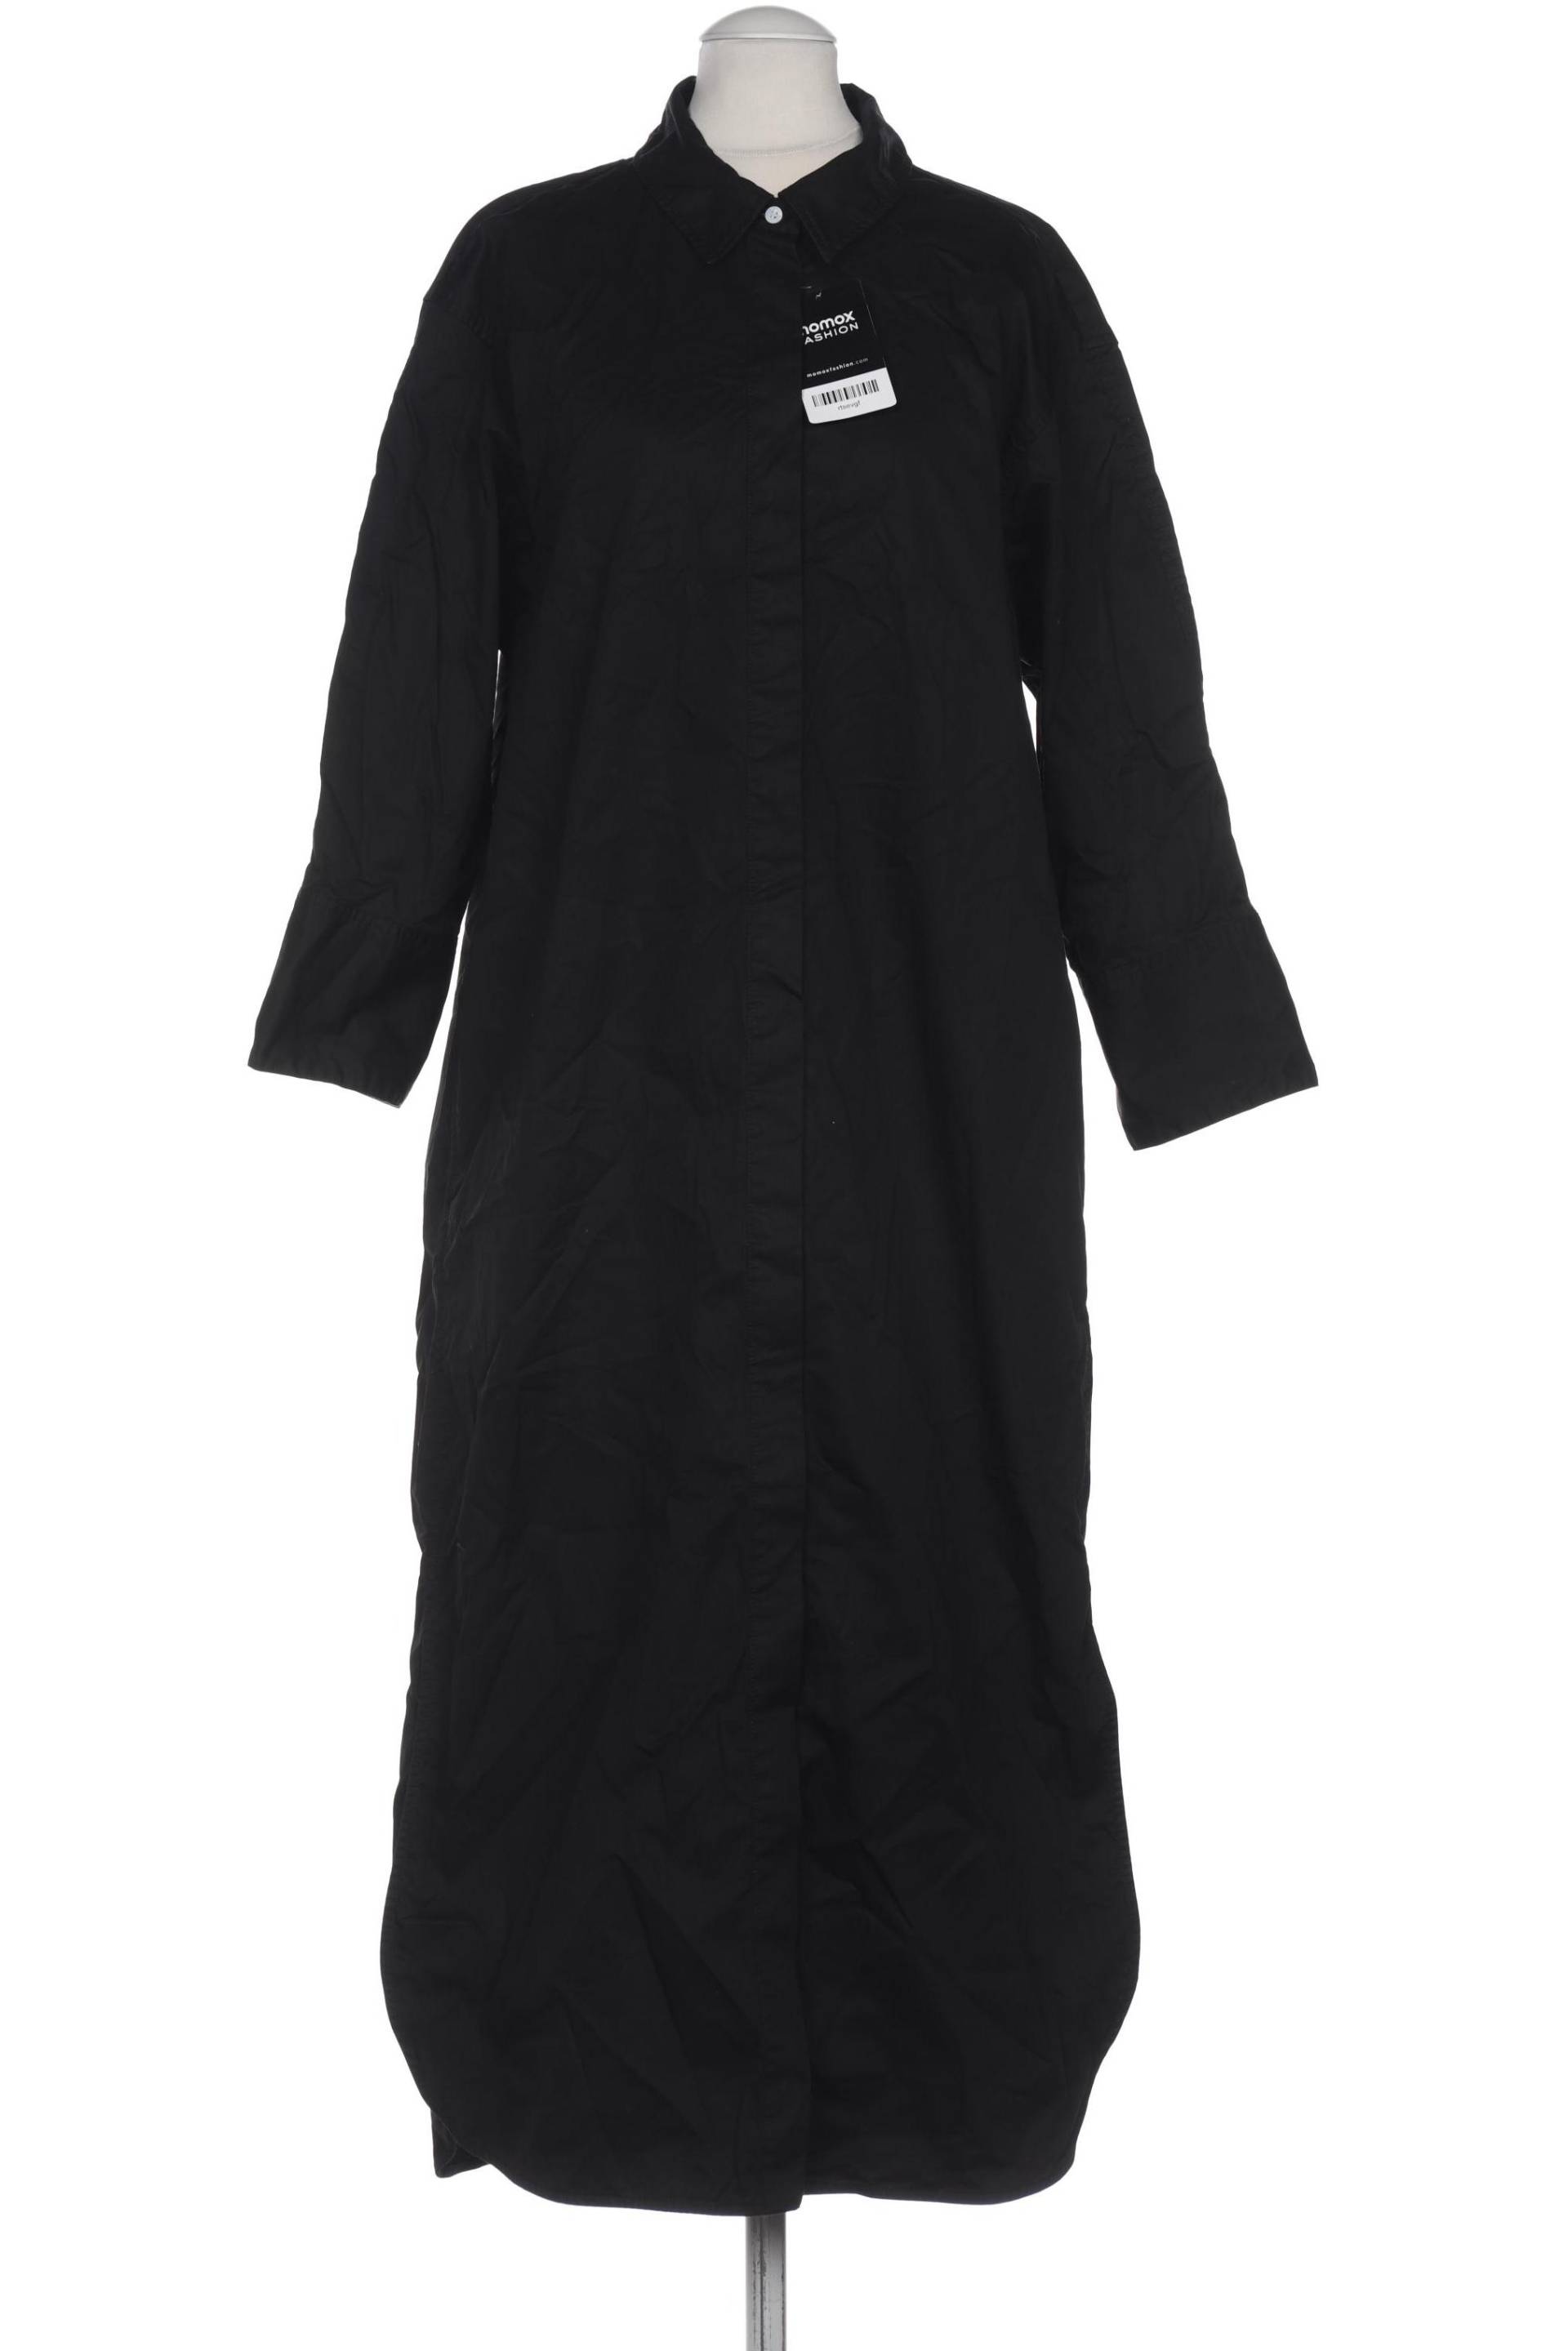 someday. Damen Kleid, schwarz, Gr. 38 von someday.